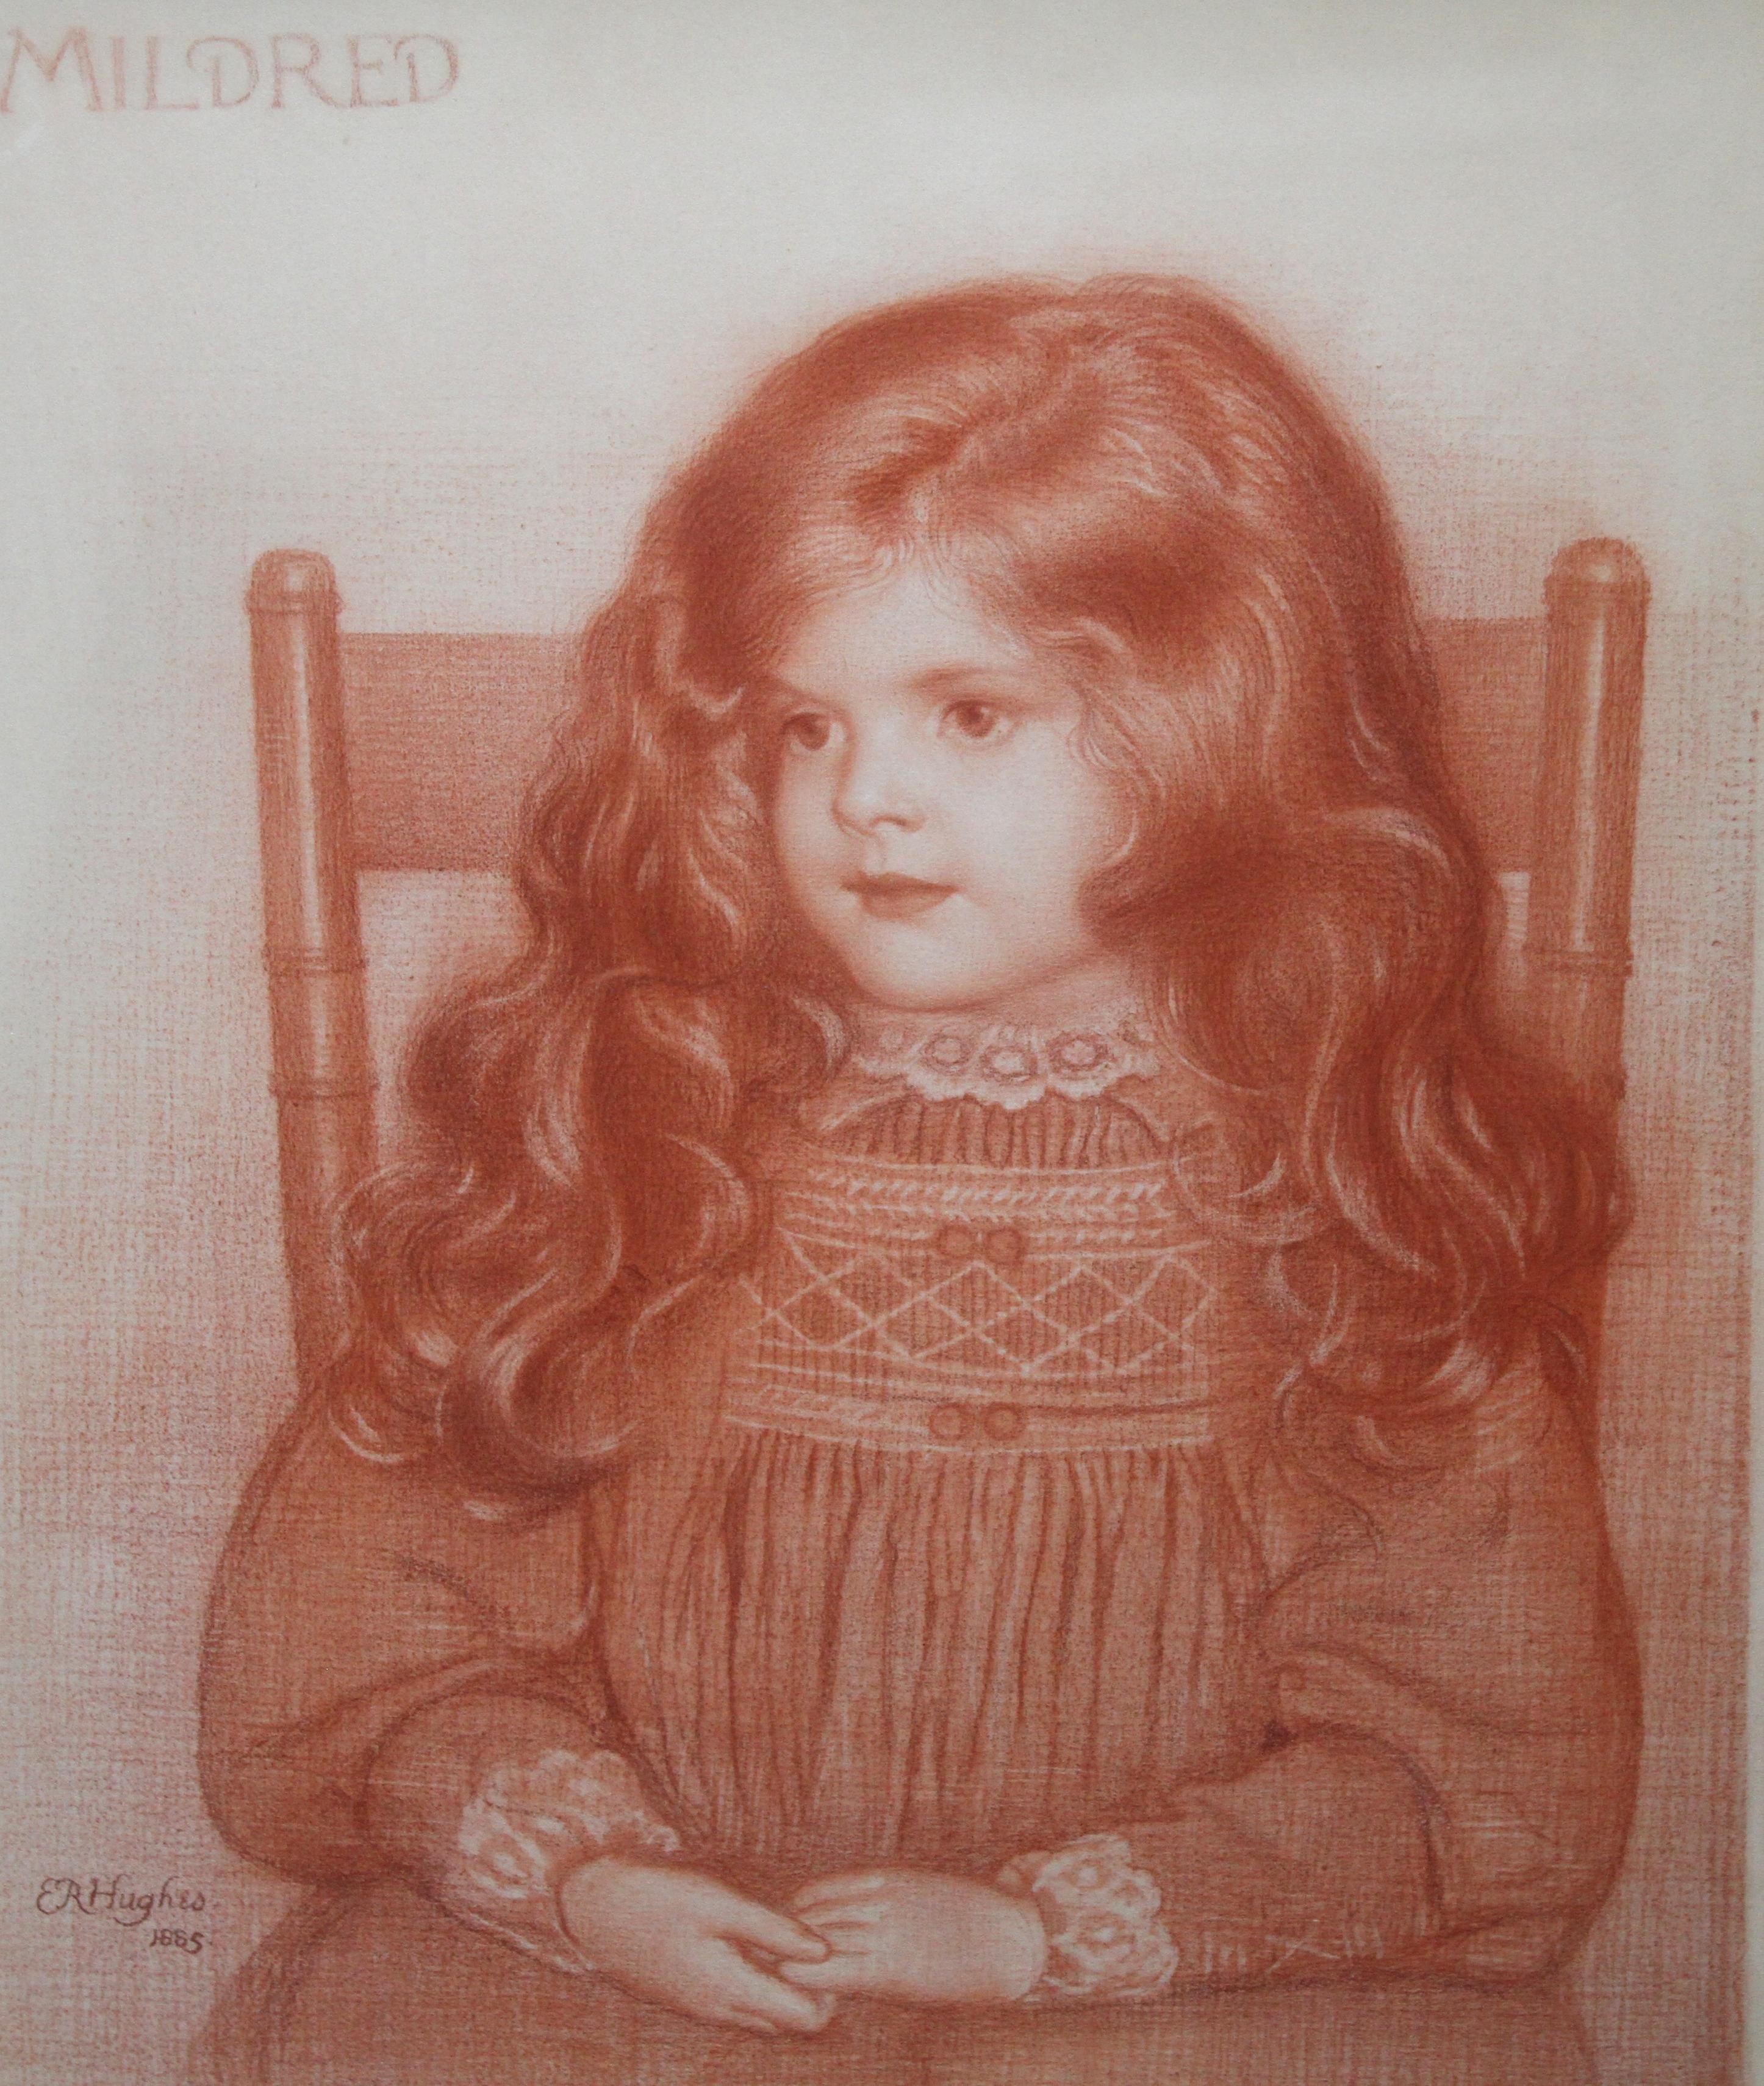 Porträt von Mildred – britisches viktorianisches, präraffaelitisches, sitzendes junges Mädchen – Art von Edward Robert Hughes